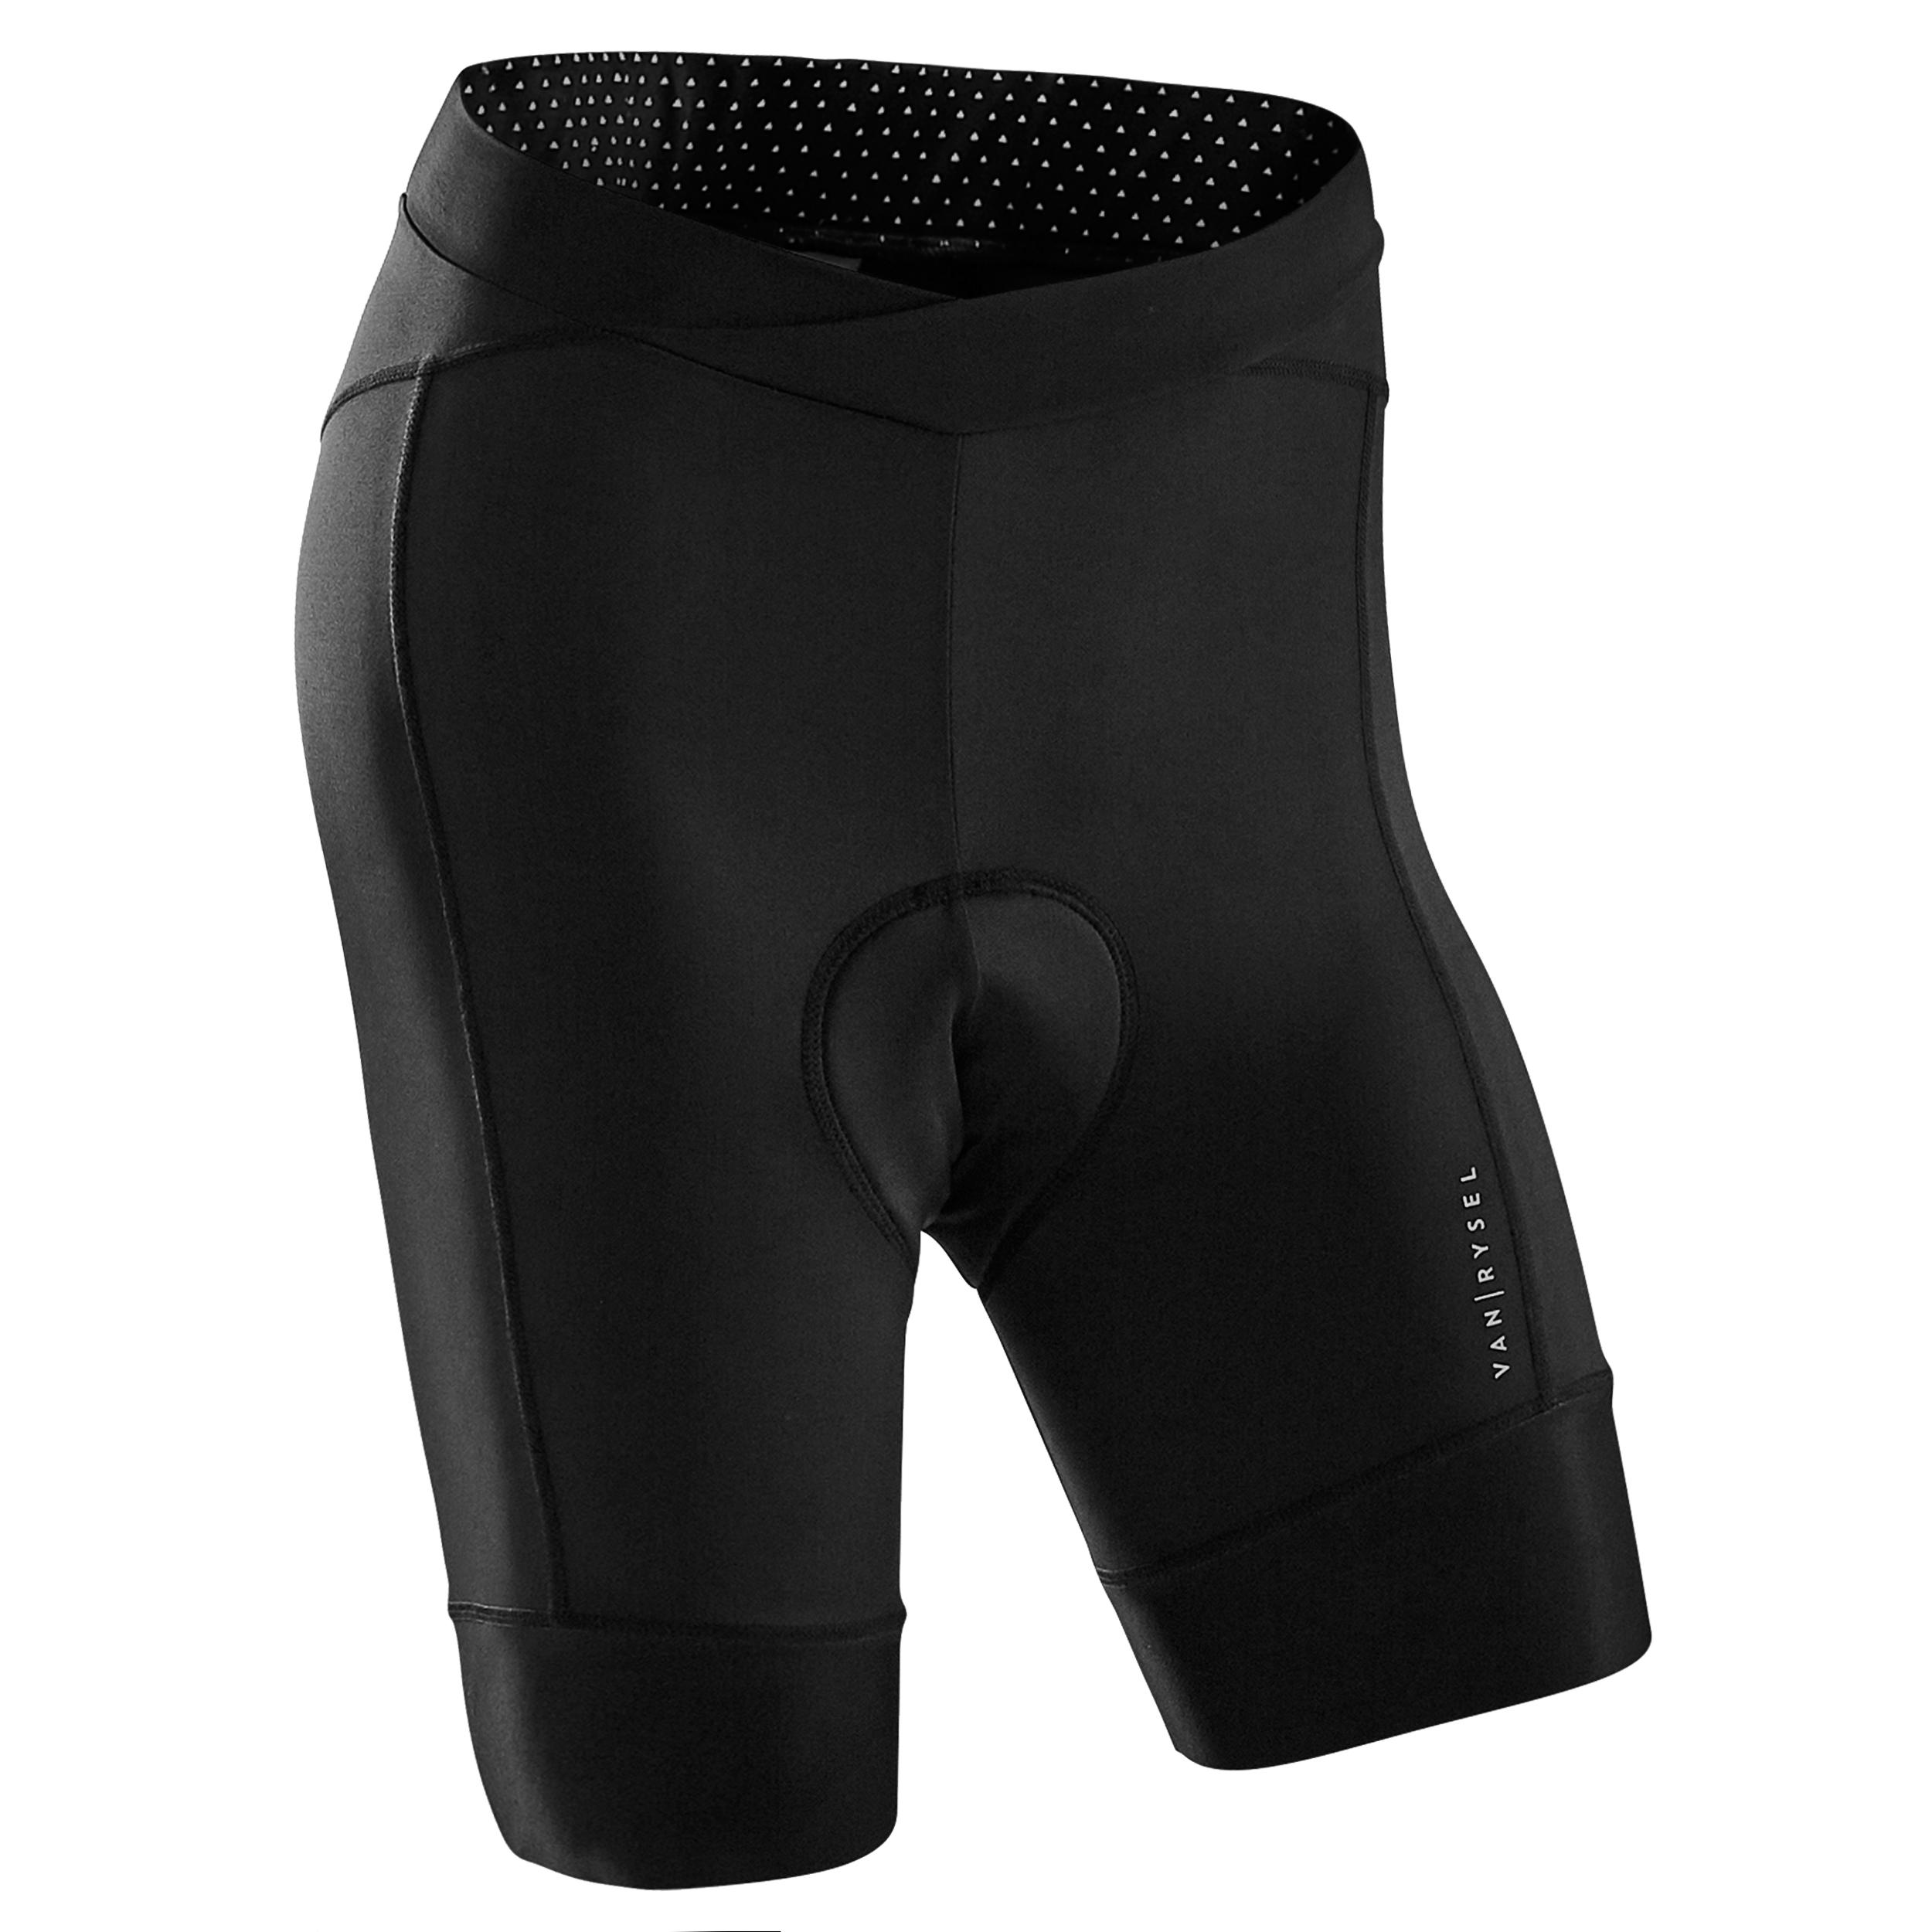 decathlon 900 bib shorts